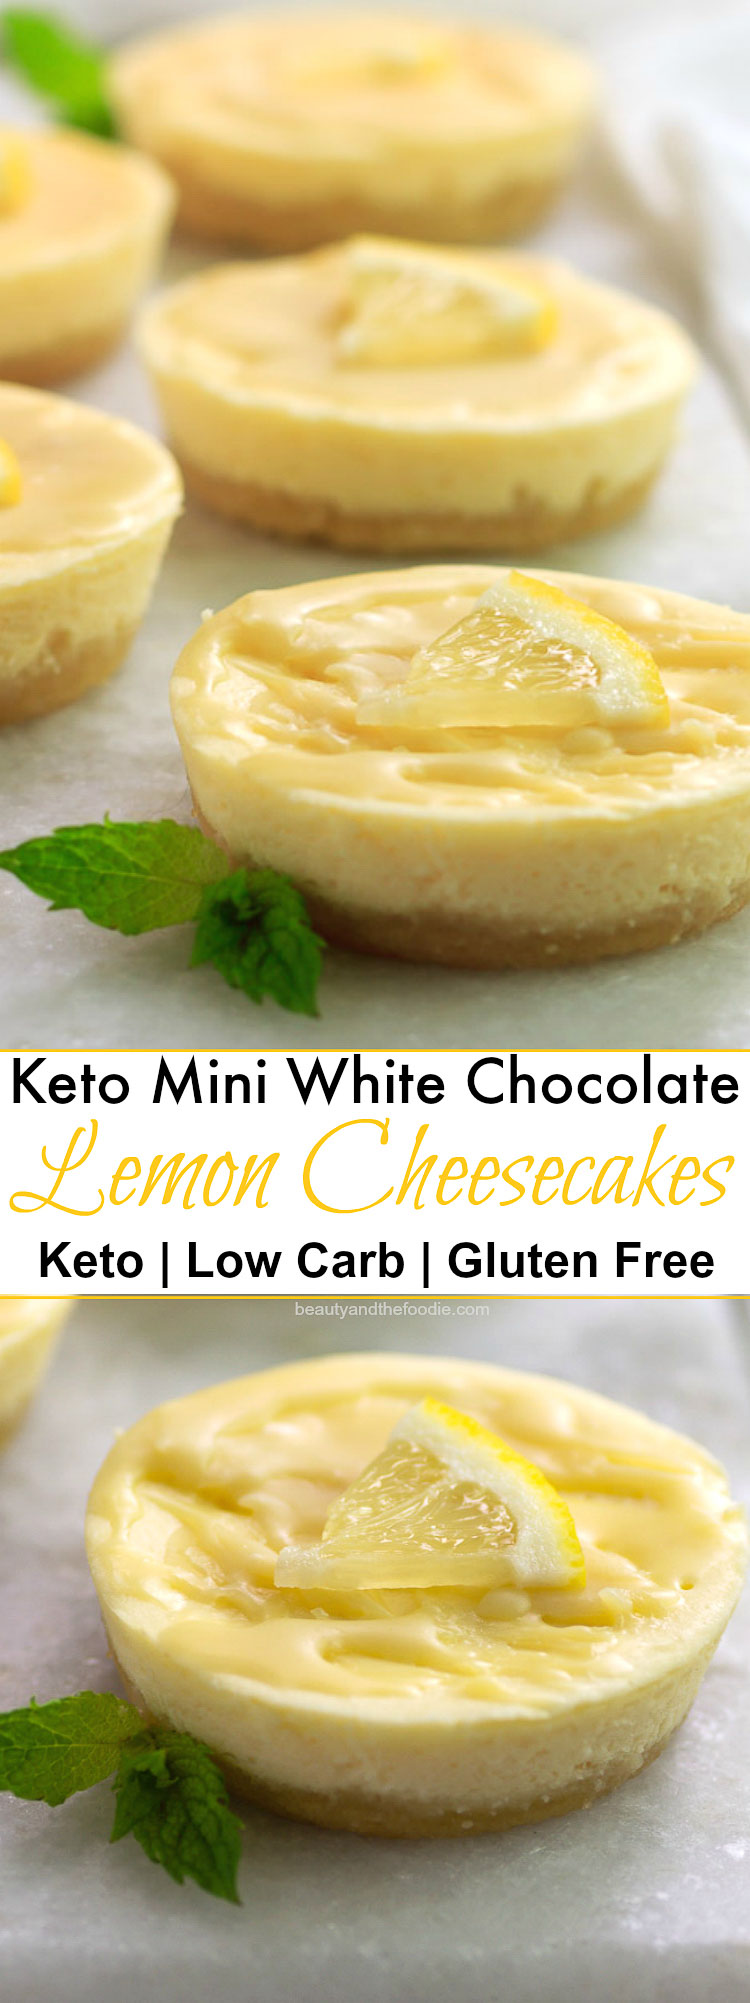 Keto White Chocolate Lemon Cheesecake Minis- Low Carb & Gluten Free